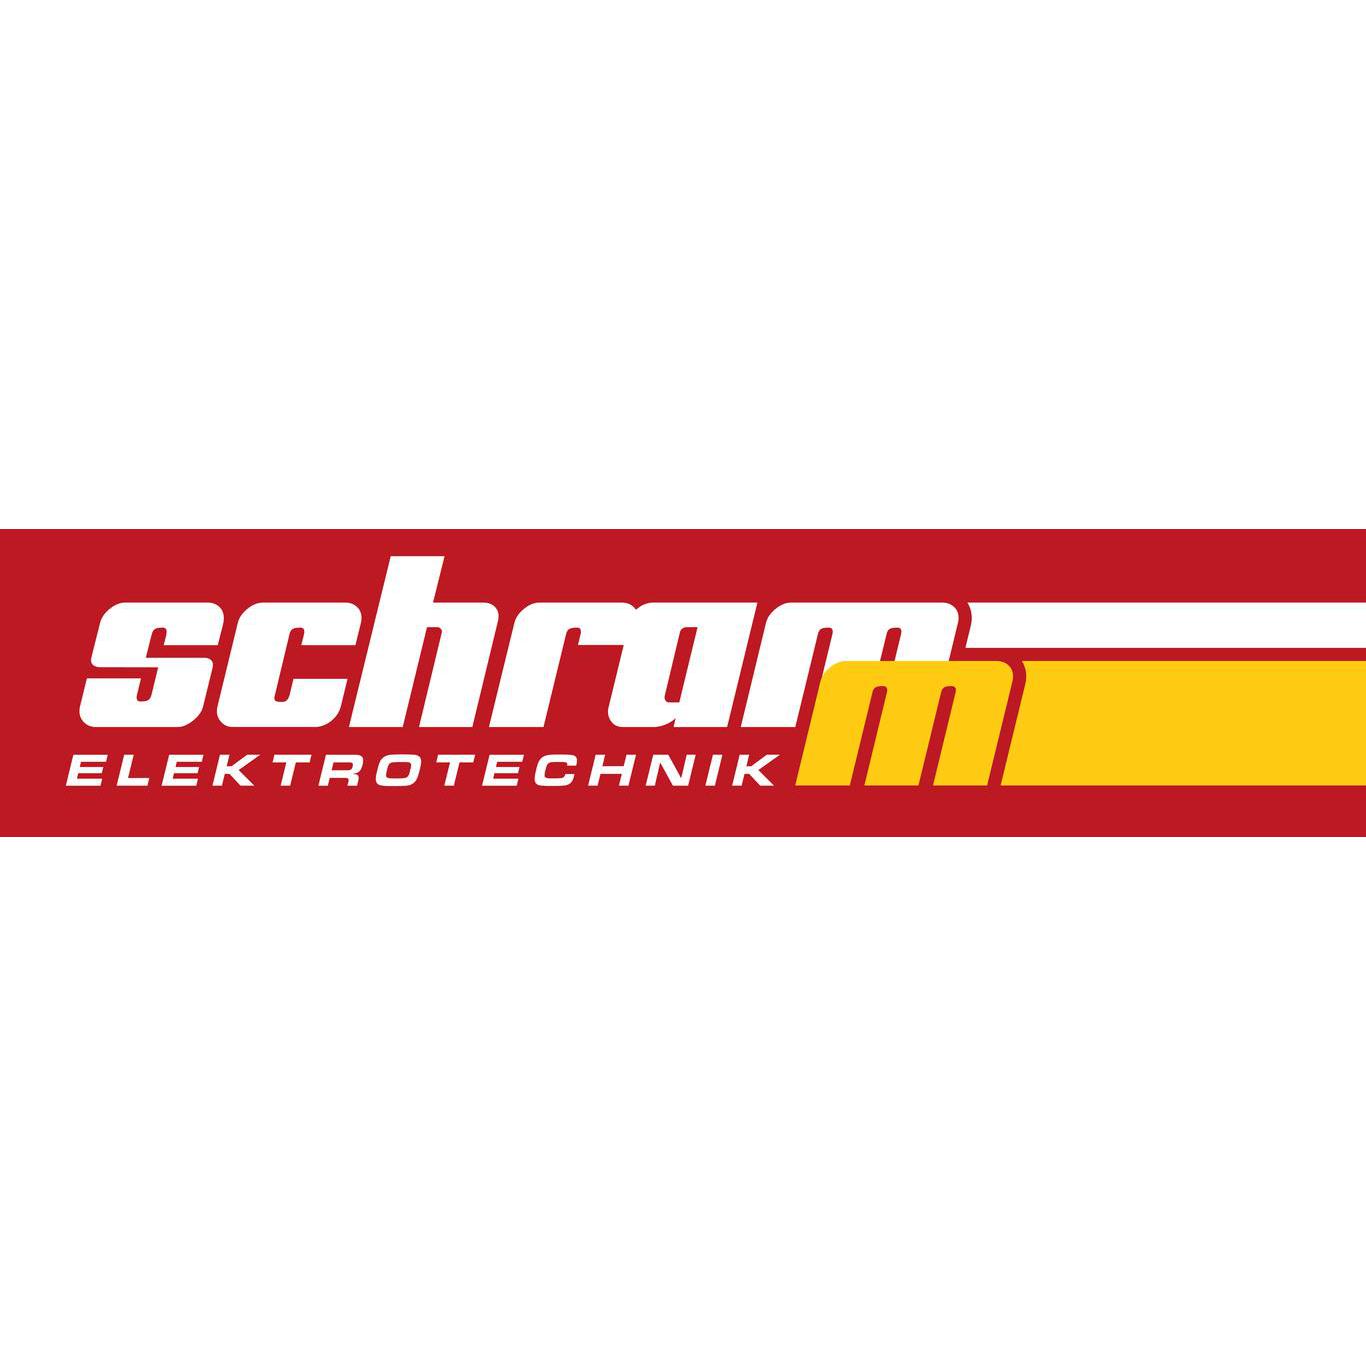 Elektrotechnik Schramm Logo